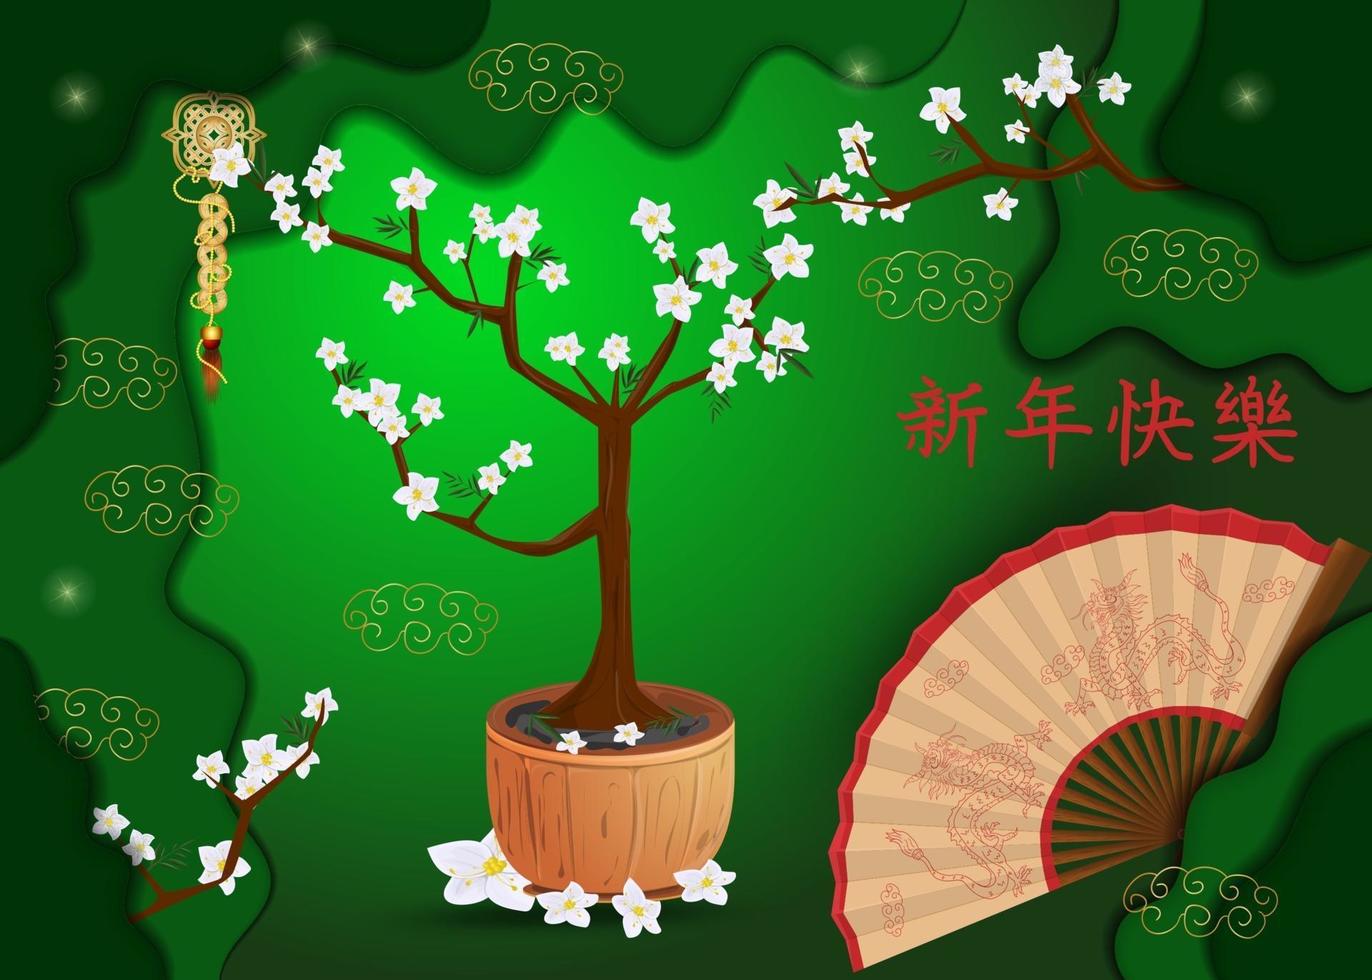 diseño de tarjeta de felicitación de año nuevo chino vector